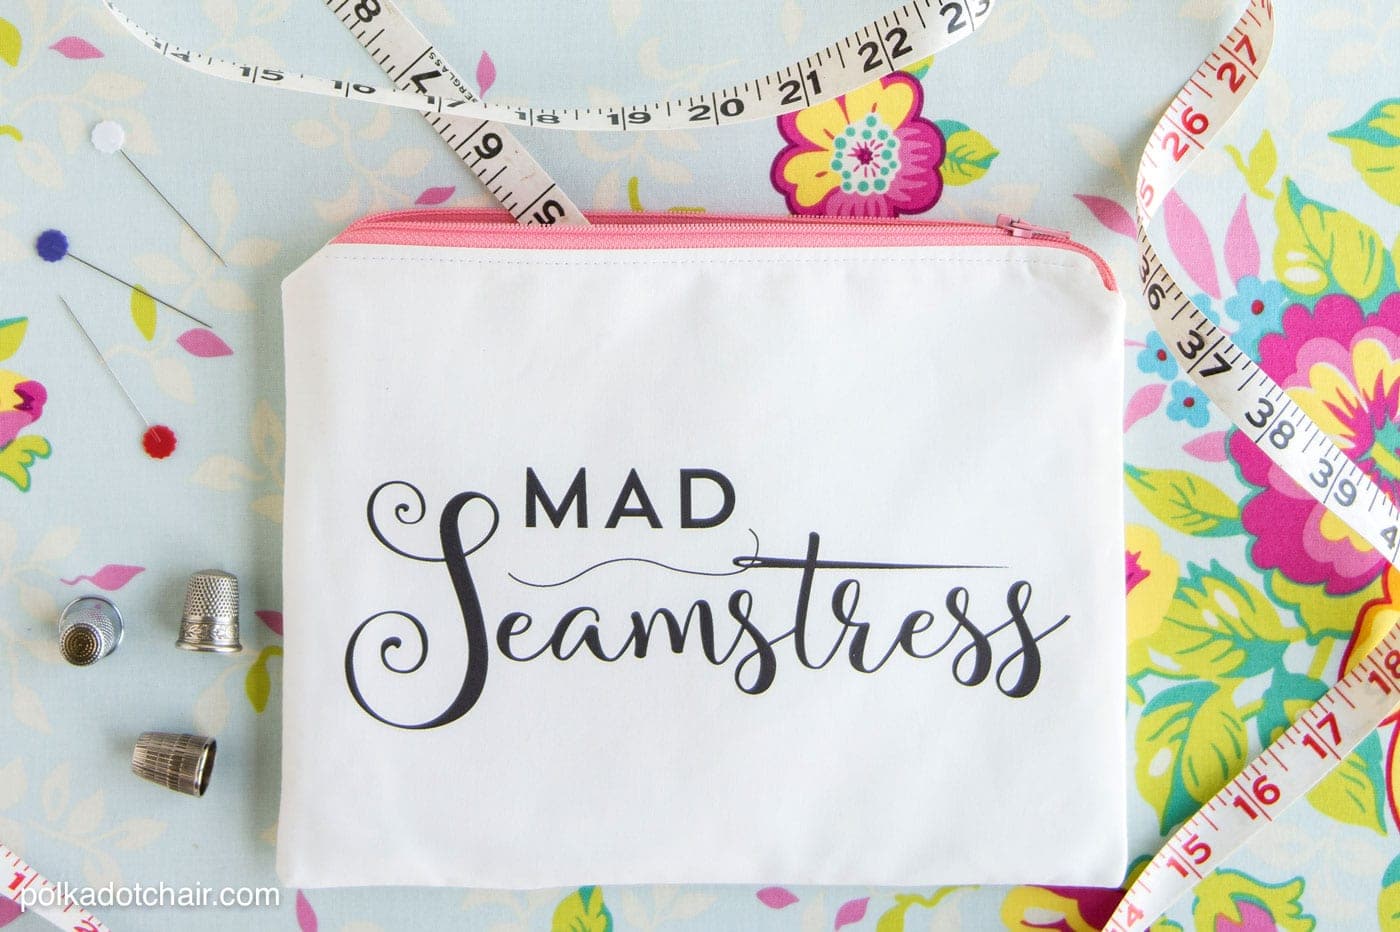 Tutoriel couture pour réaliser cette pochette zippée "Mad Seamstress". Vous pouvez télécharger l’image et l’imprimer vous-même chez vous sur du tissu !